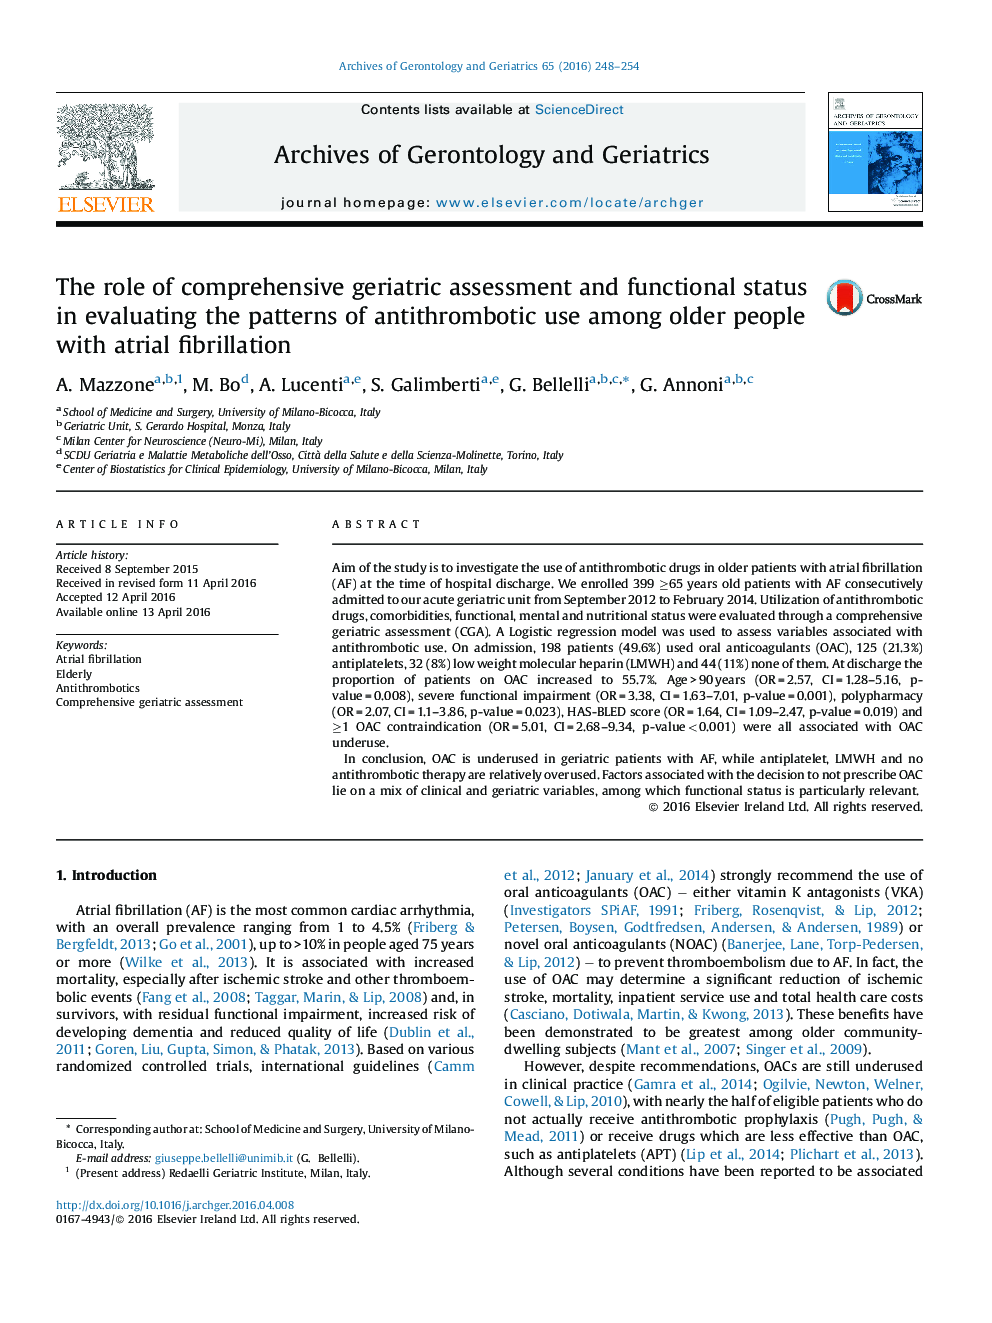 نقش جامع ارزیابی و وضعیت عملکردی زنان در ارزیابی الگوهای استفاده از آنتی ترومبوتیک در افراد مسن با فیبریلاسیون دهلیزی